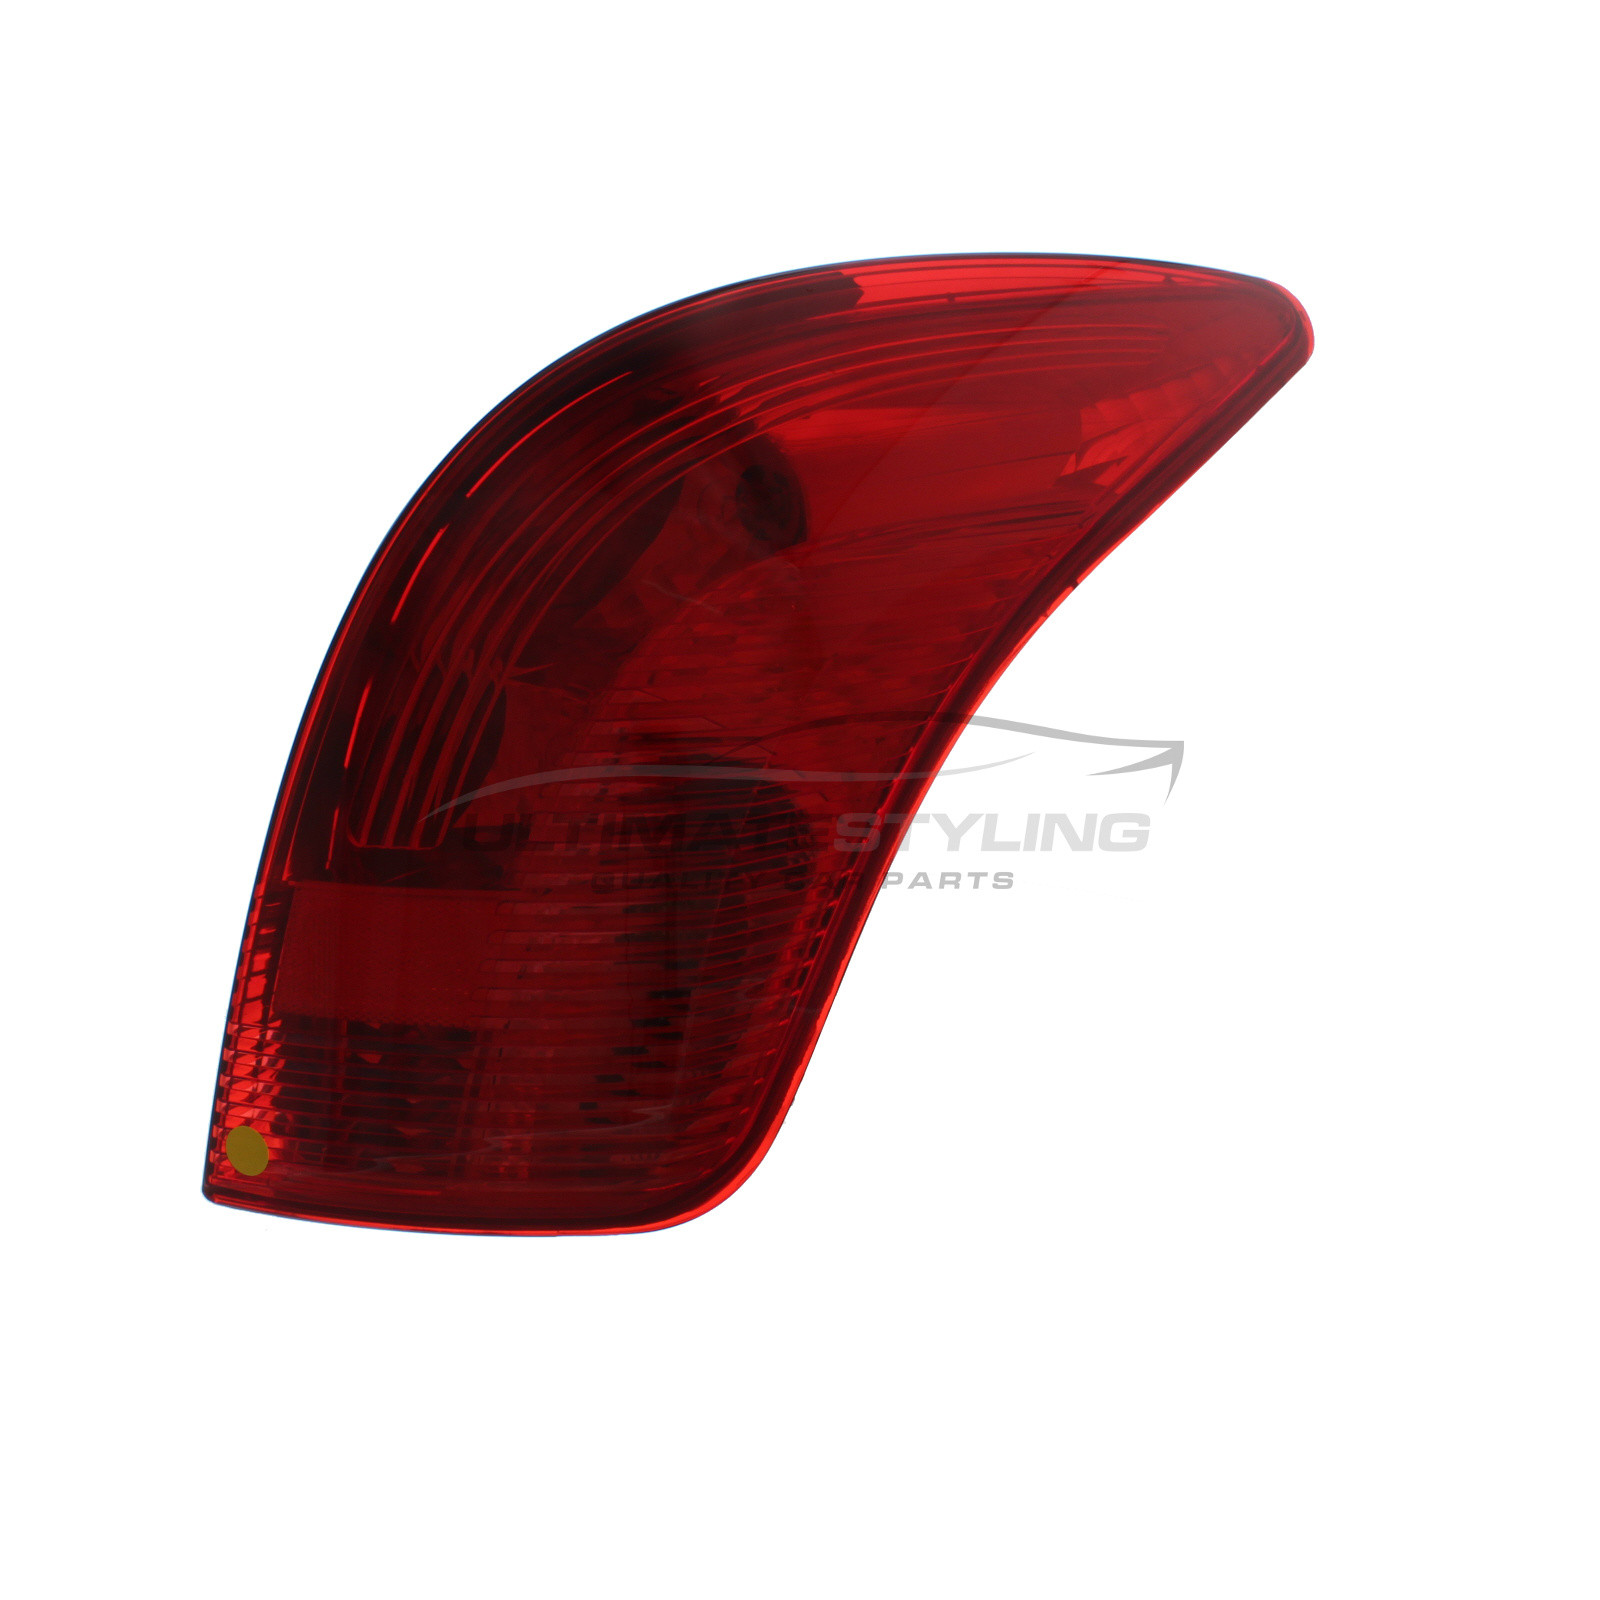 Peugeot 308 2008-2015 Non-LED Red Lens Rear Light / Tail Light Including Bulb Holder Drivers Side (RH)